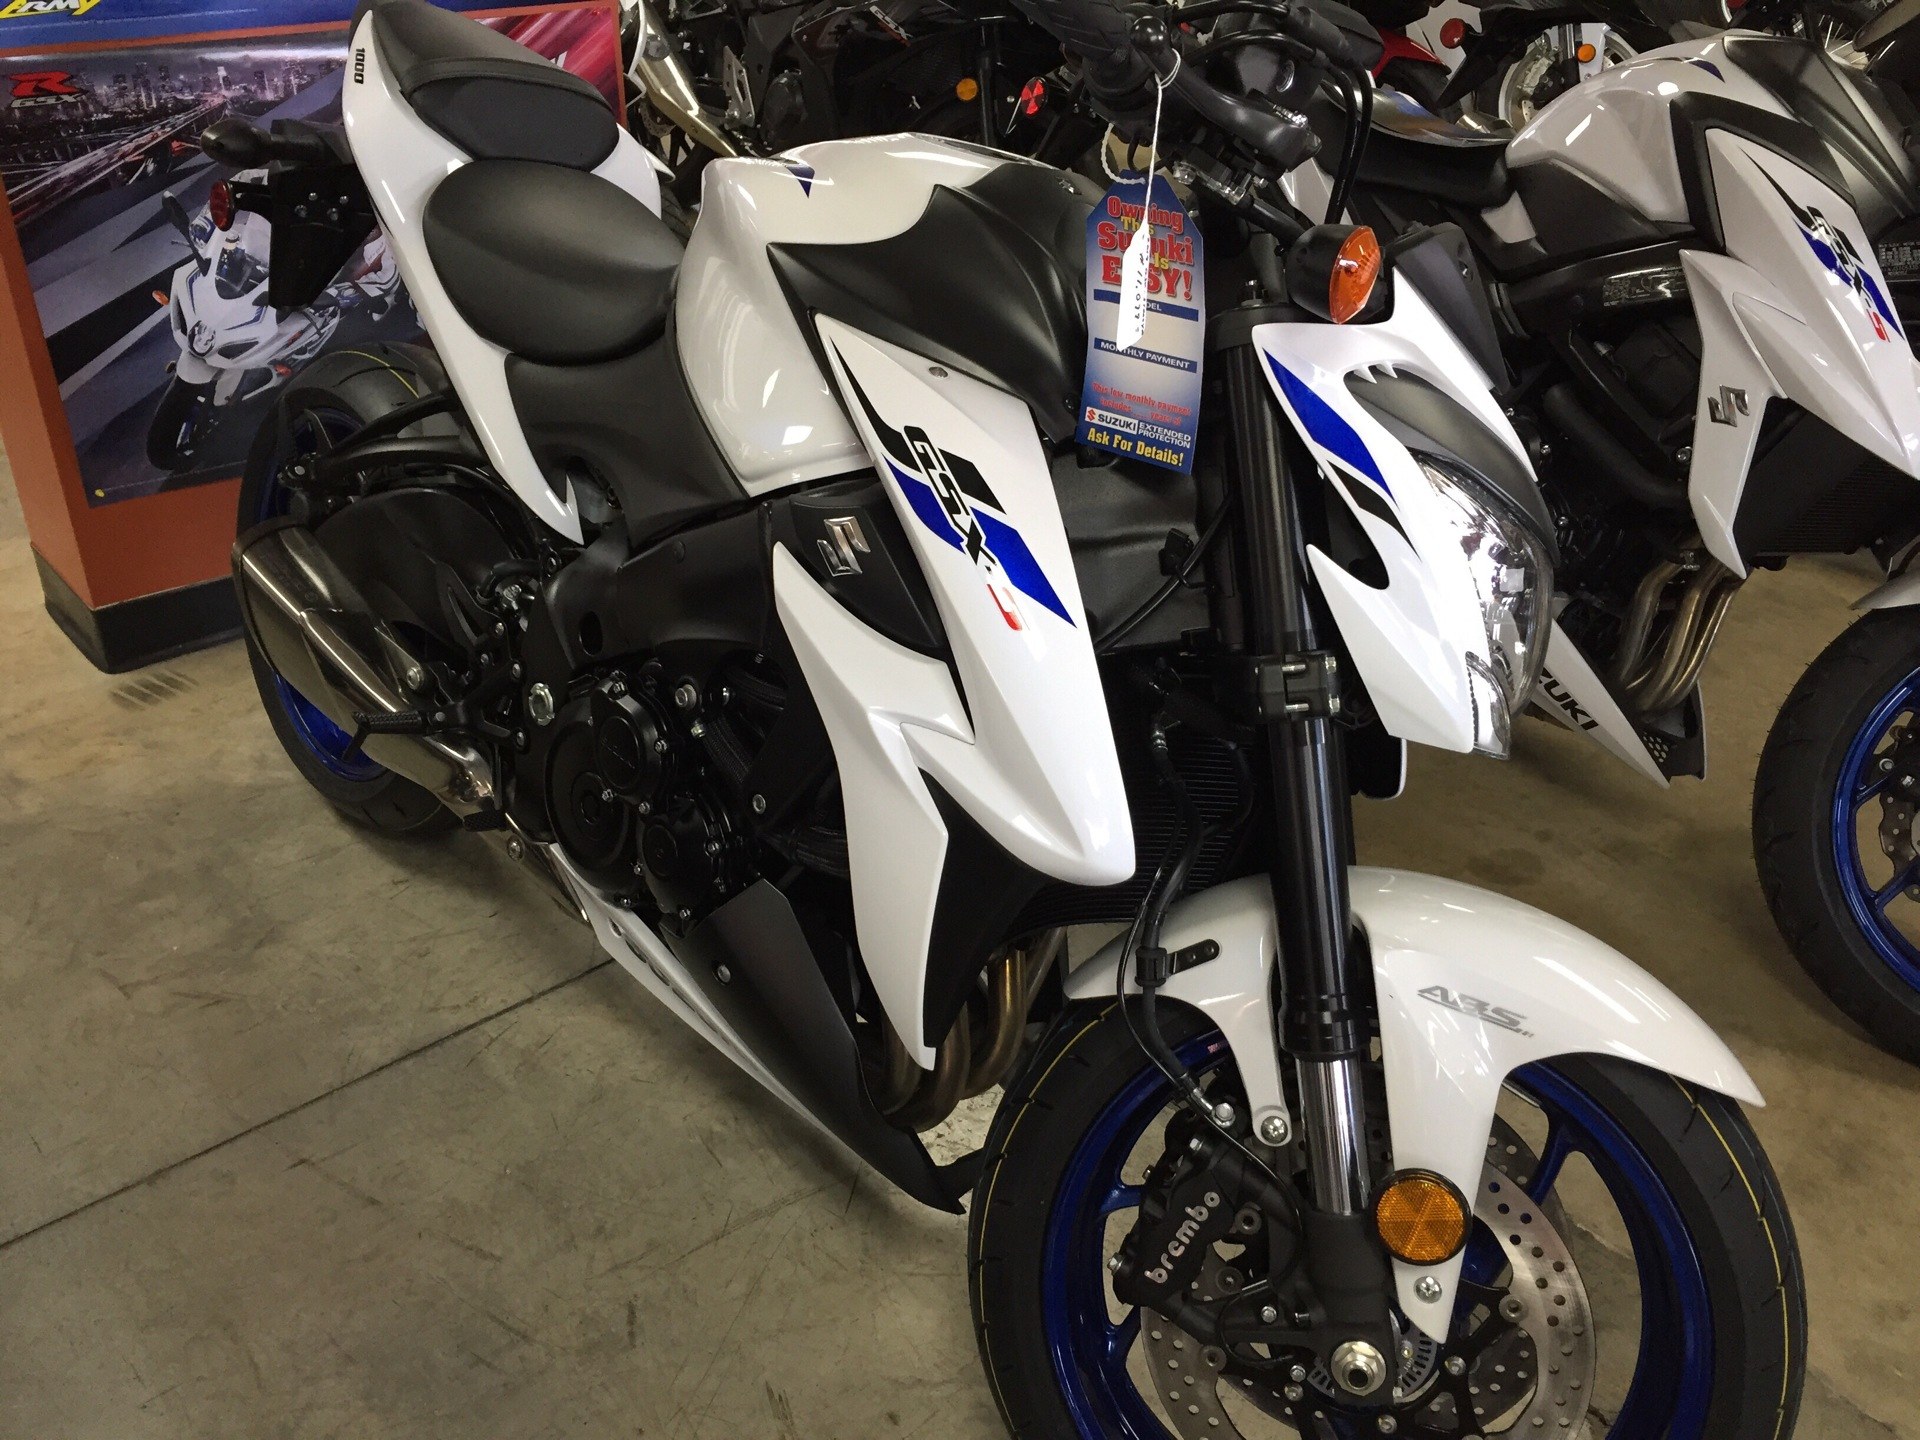 New 19 Suzuki Gsx S1000 Abs Pearl Glacier White Motorcycles In Sanford Nc Sn6976